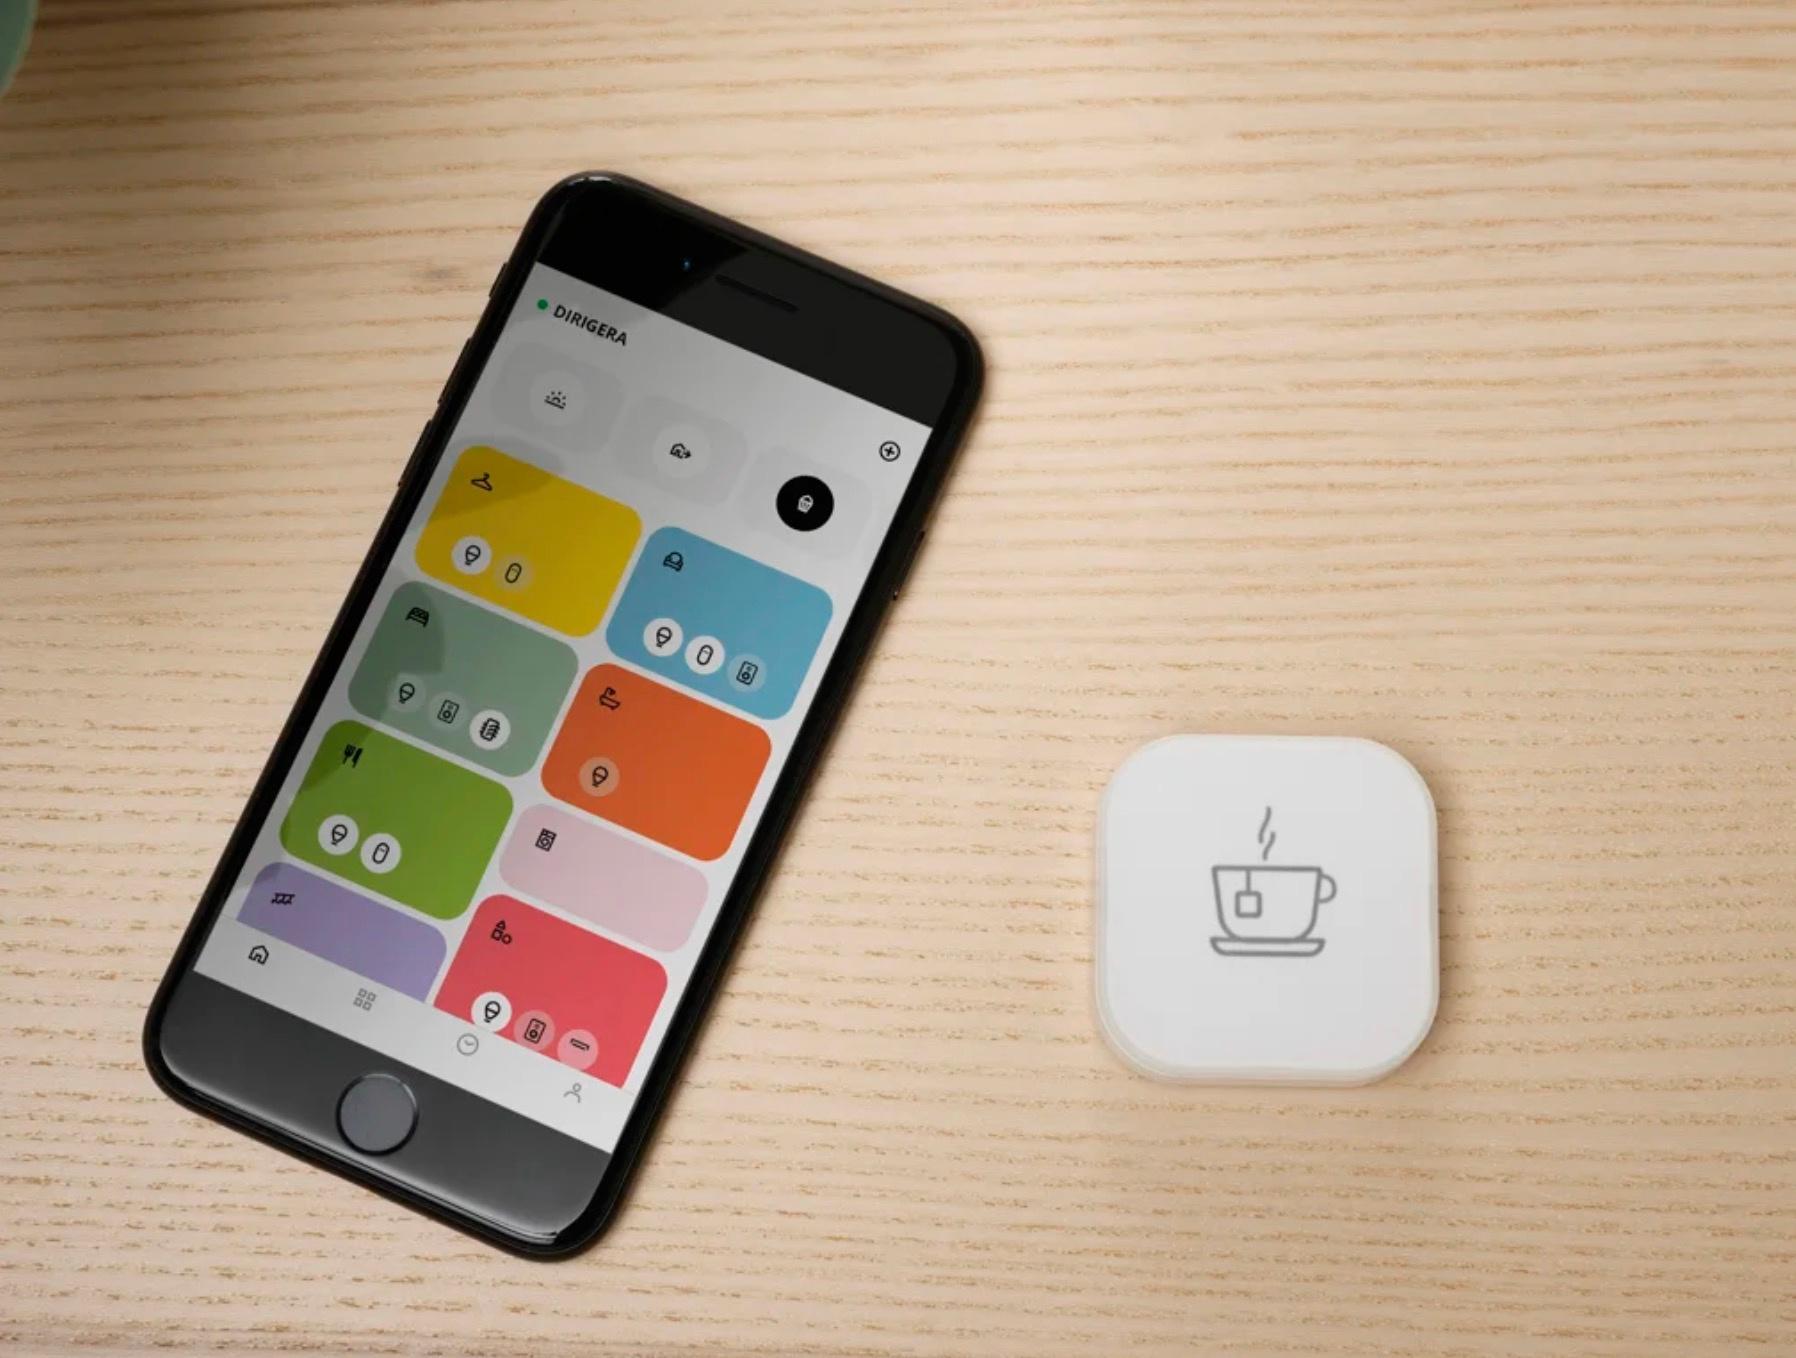 Conjointement avec le hub Dirigera, IKEA lance aussi l'appli Home Smart rénovée.